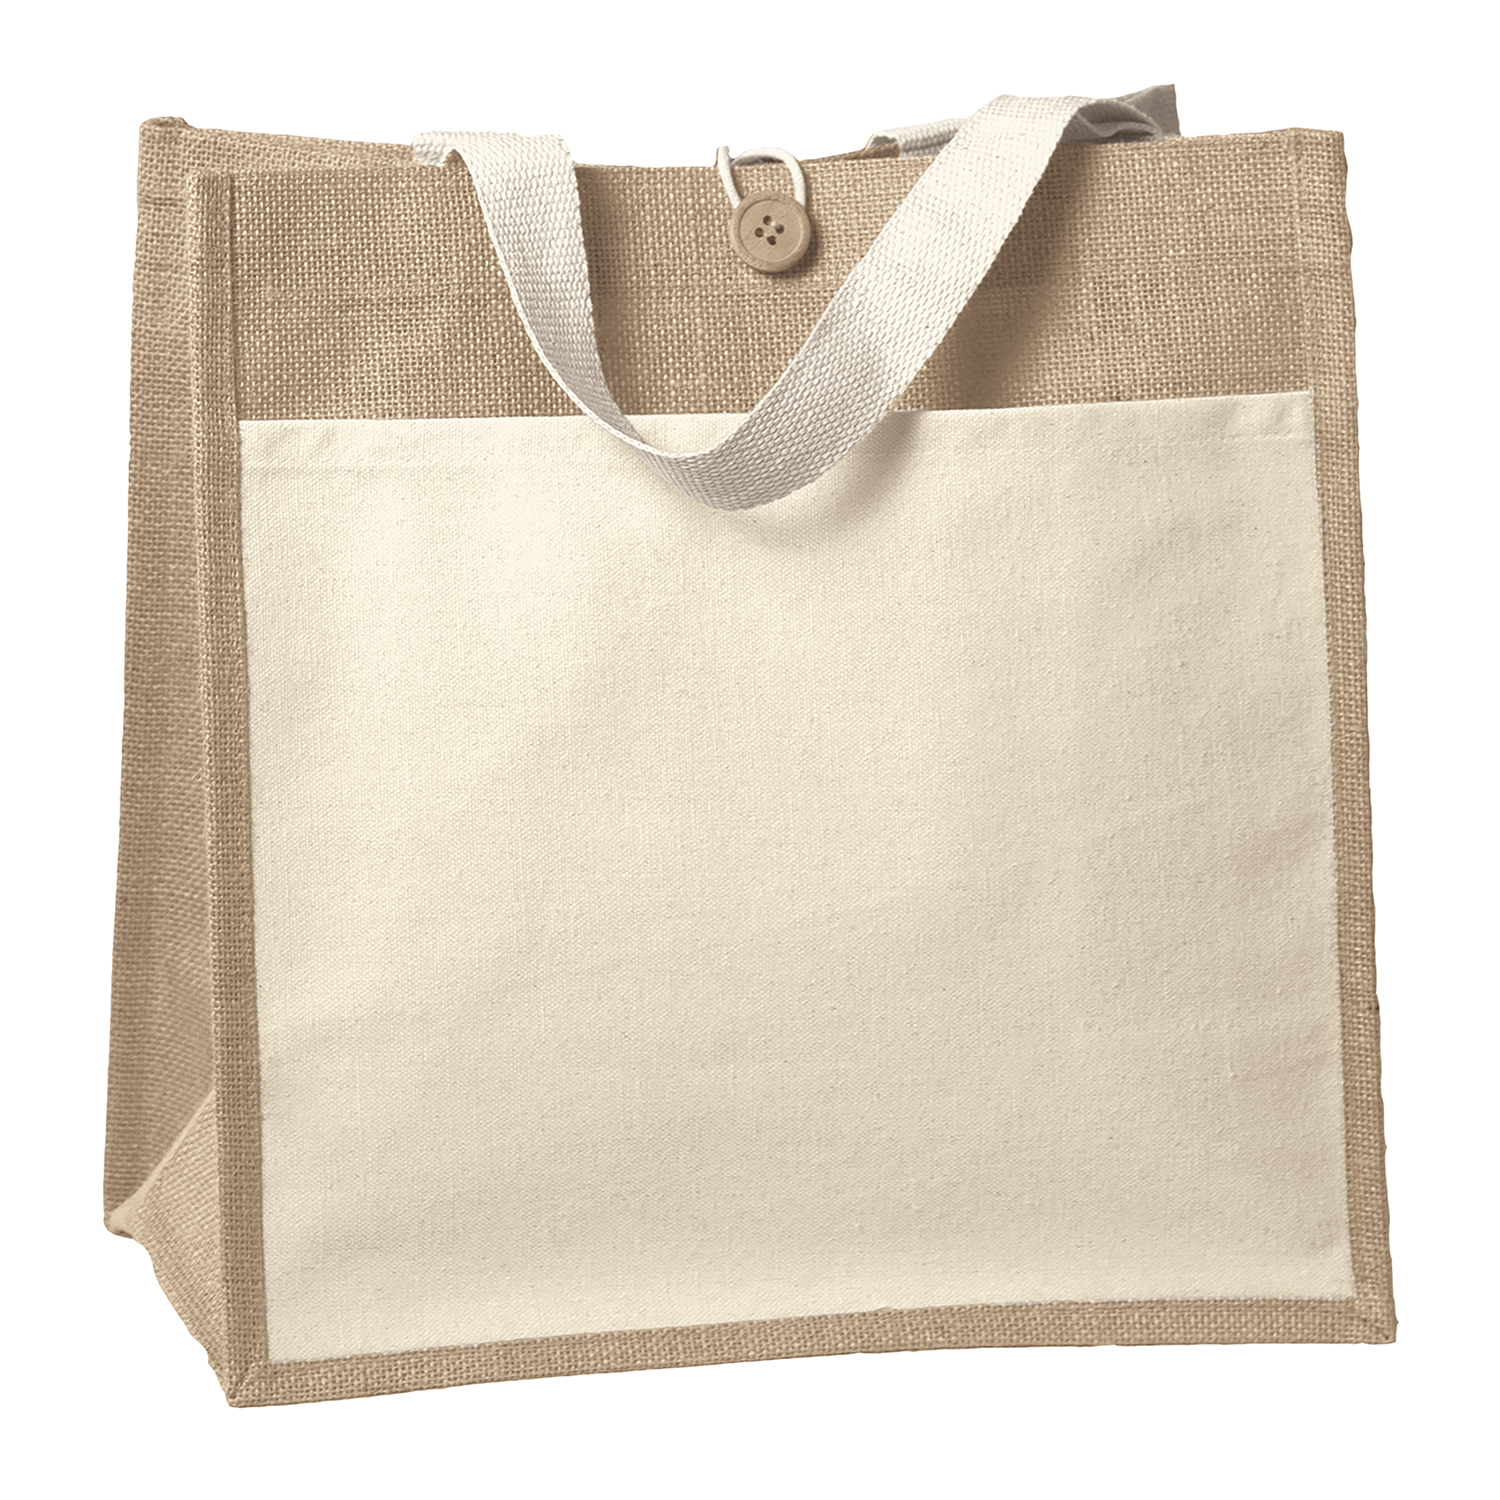 Bag Makers CVIZ1414 - Custom Printed Reusable Tote Bag